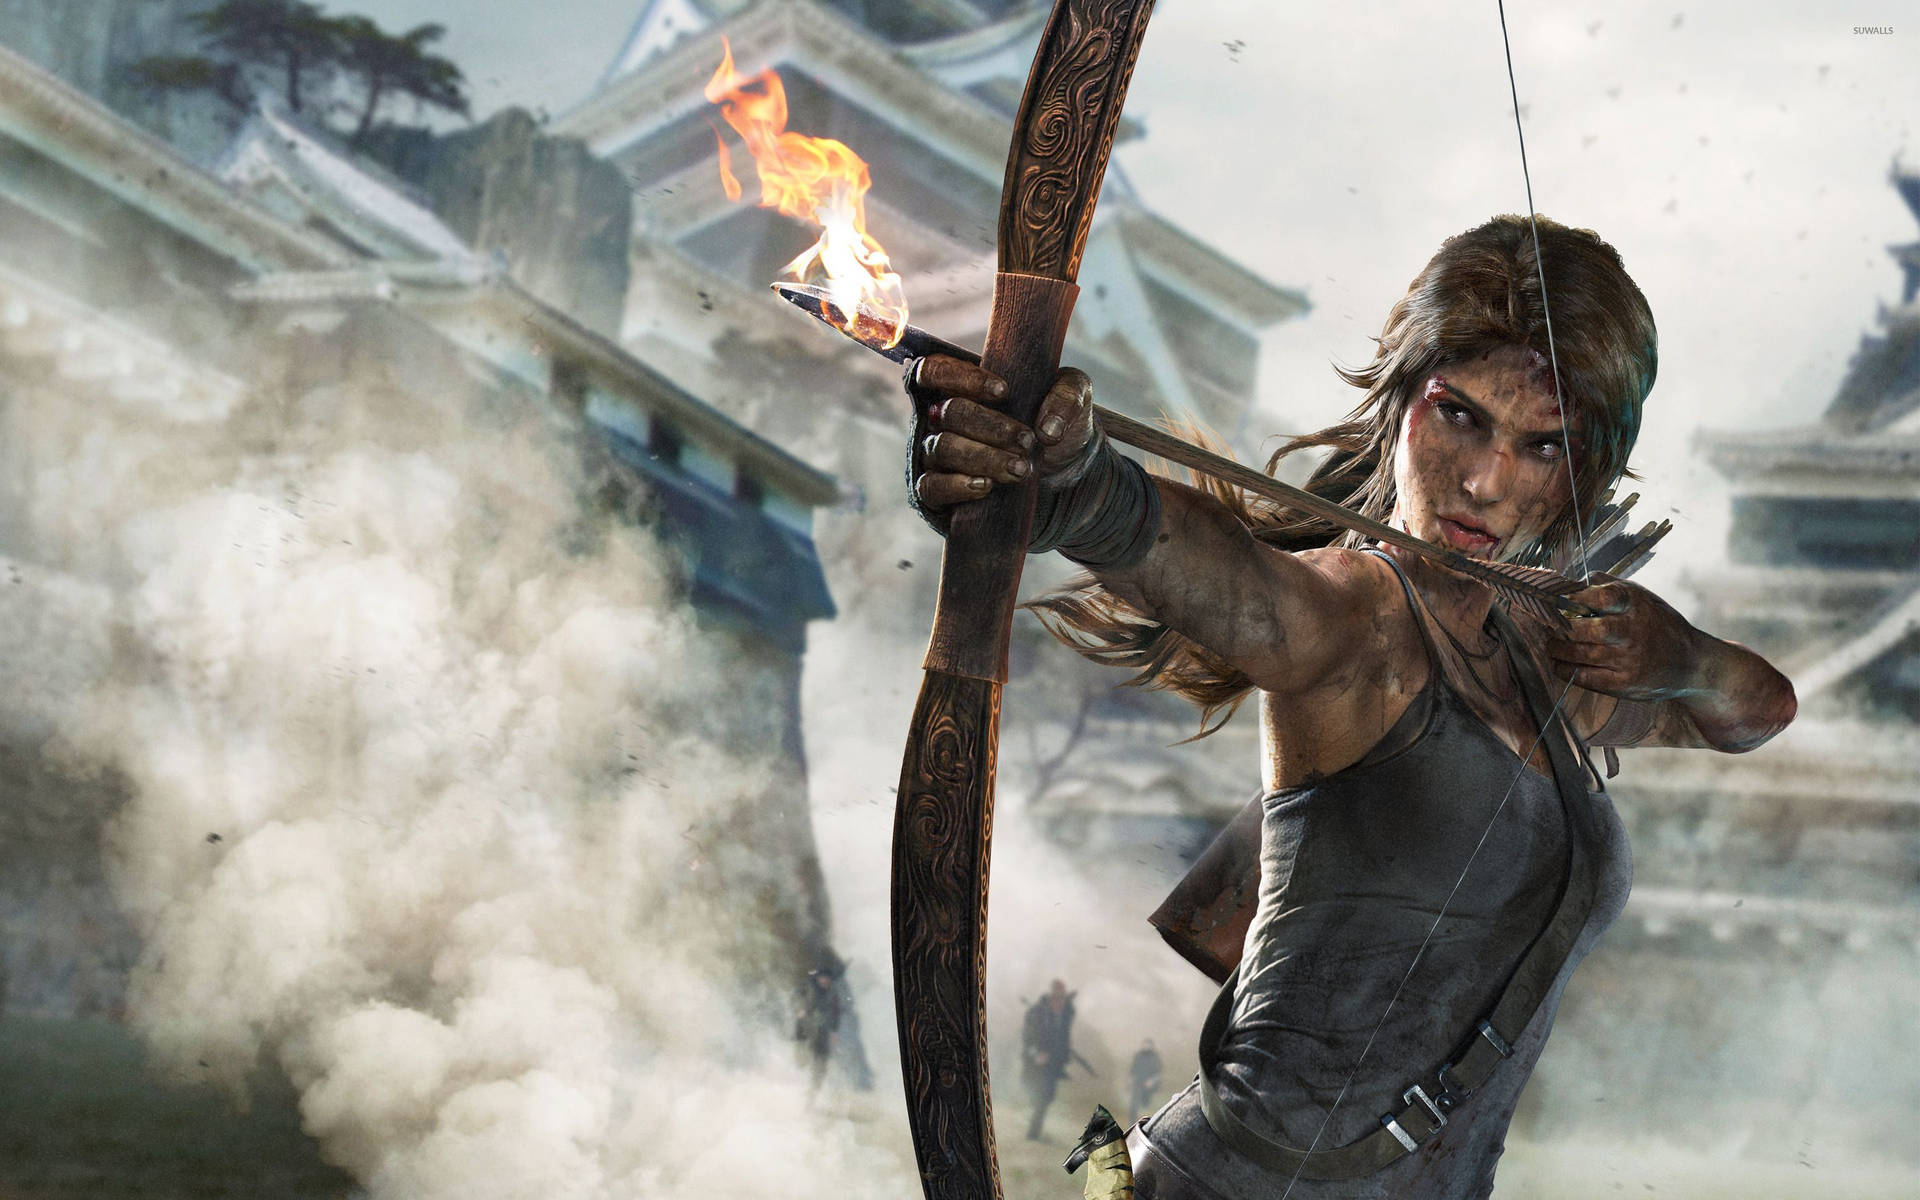 Laura Croft i aktion, da hun springer fra et tag til et andet i den seneste Tomb Raider-spil. Wallpaper